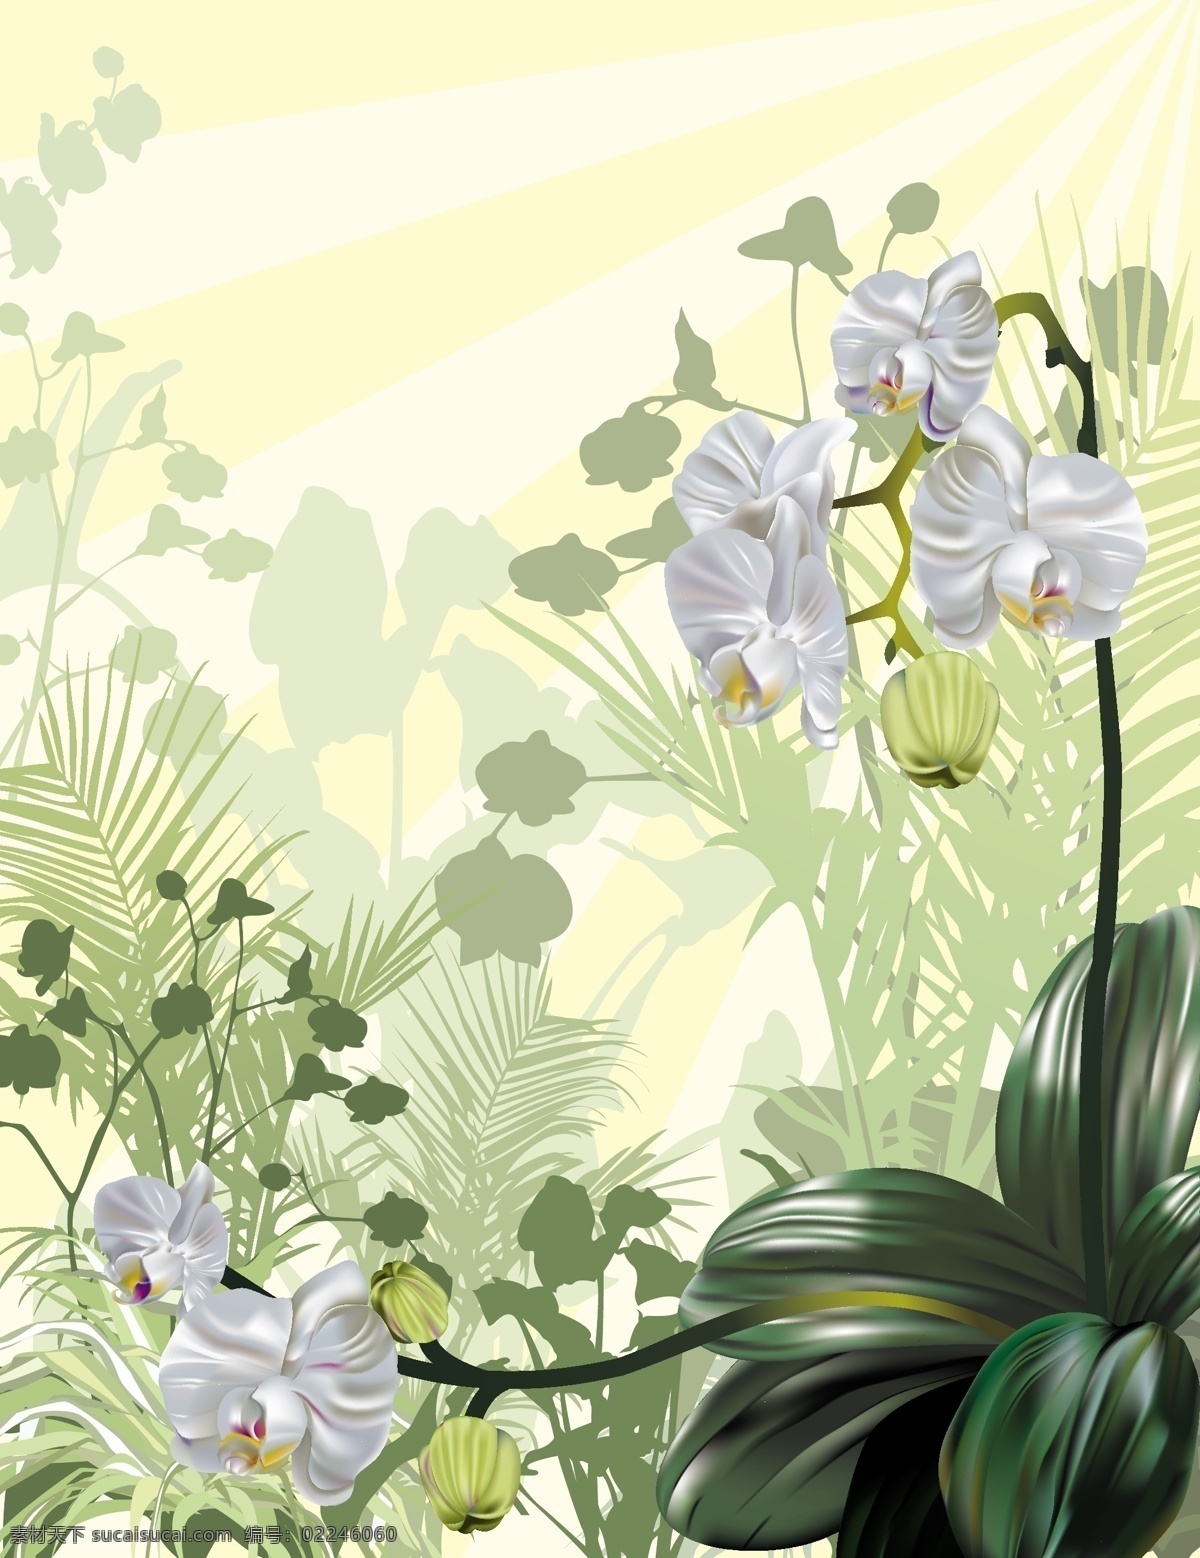 向量 兰花 中 插入 媒介生物学 矢量植物兰花 pictureorchid 矢量图 其他矢量图